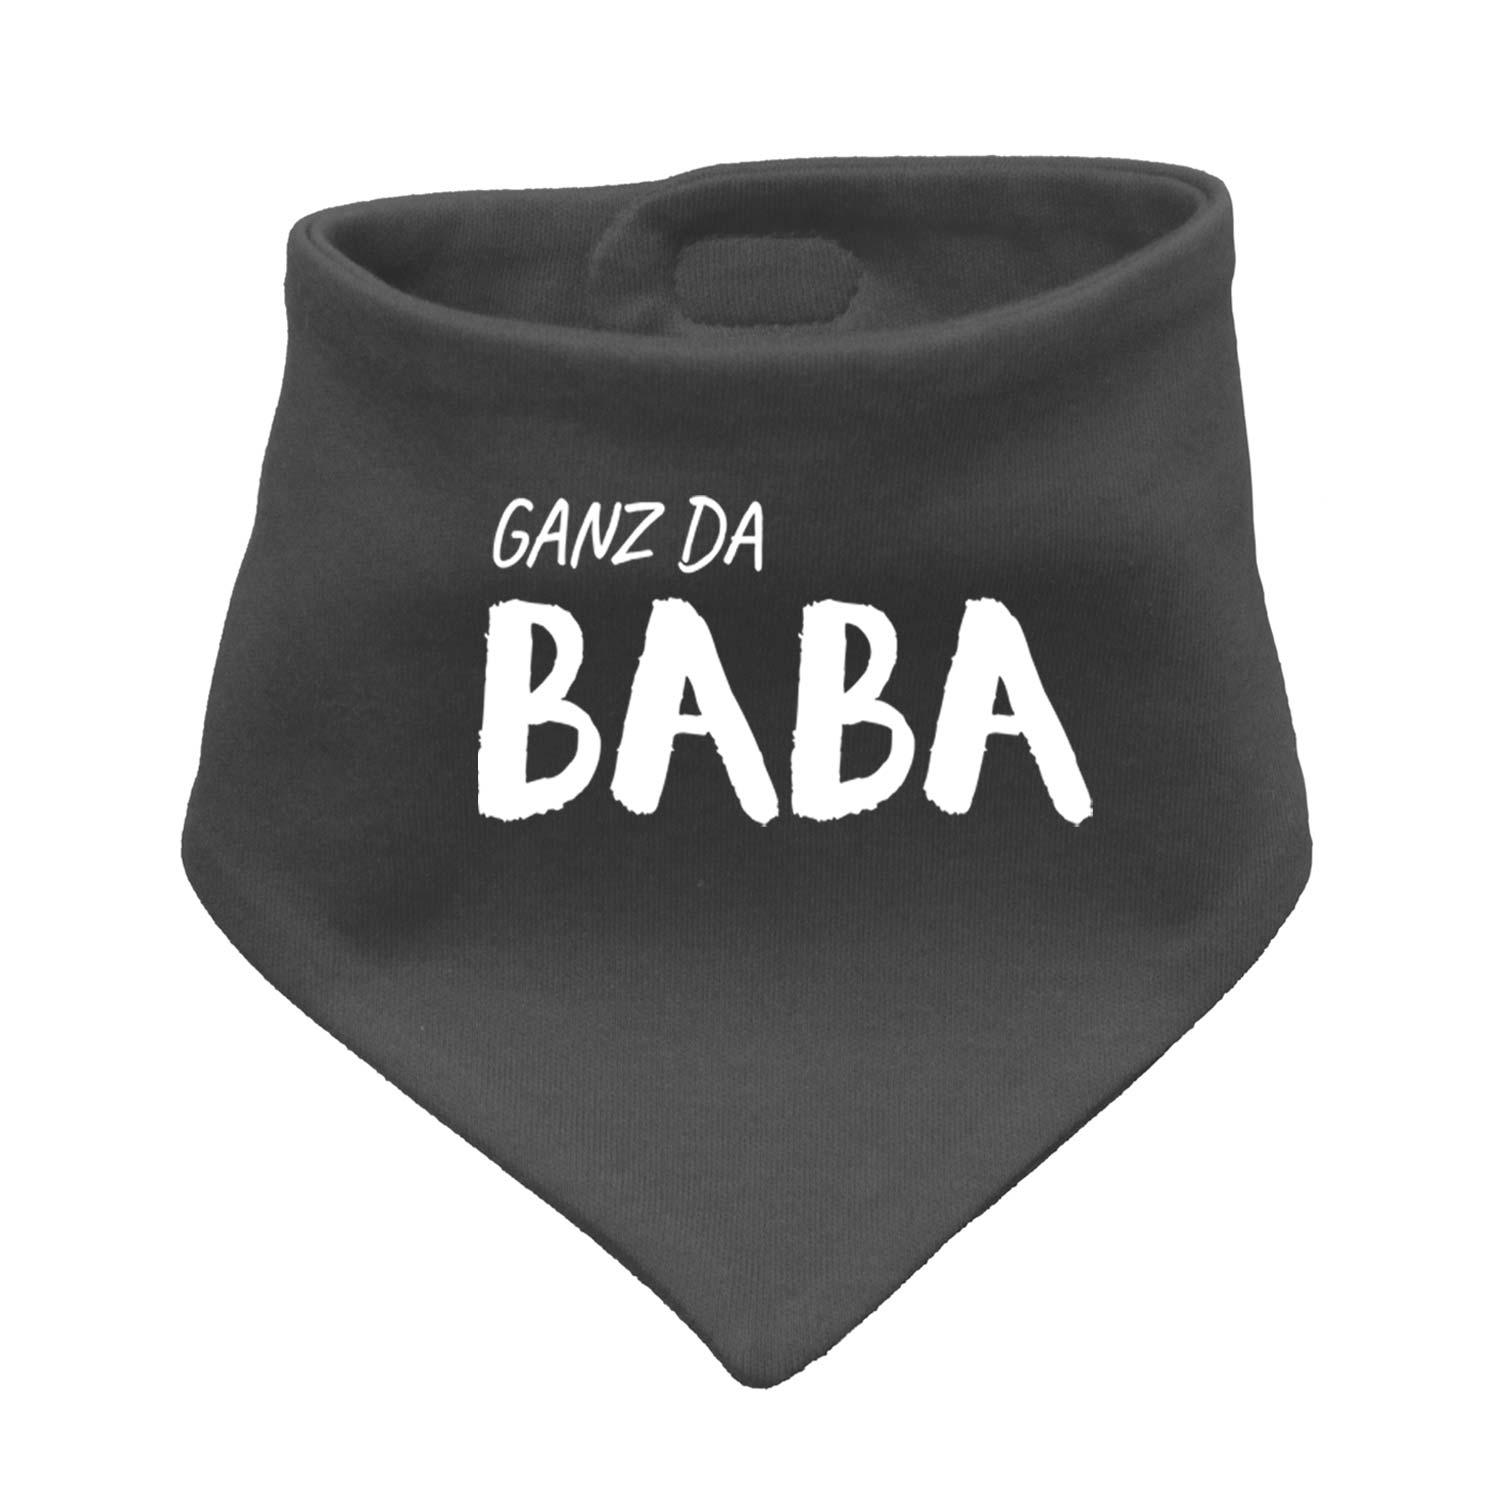 Babyhalstuch "Ganz da Baba!" - bavariashop - mei LebensGfui